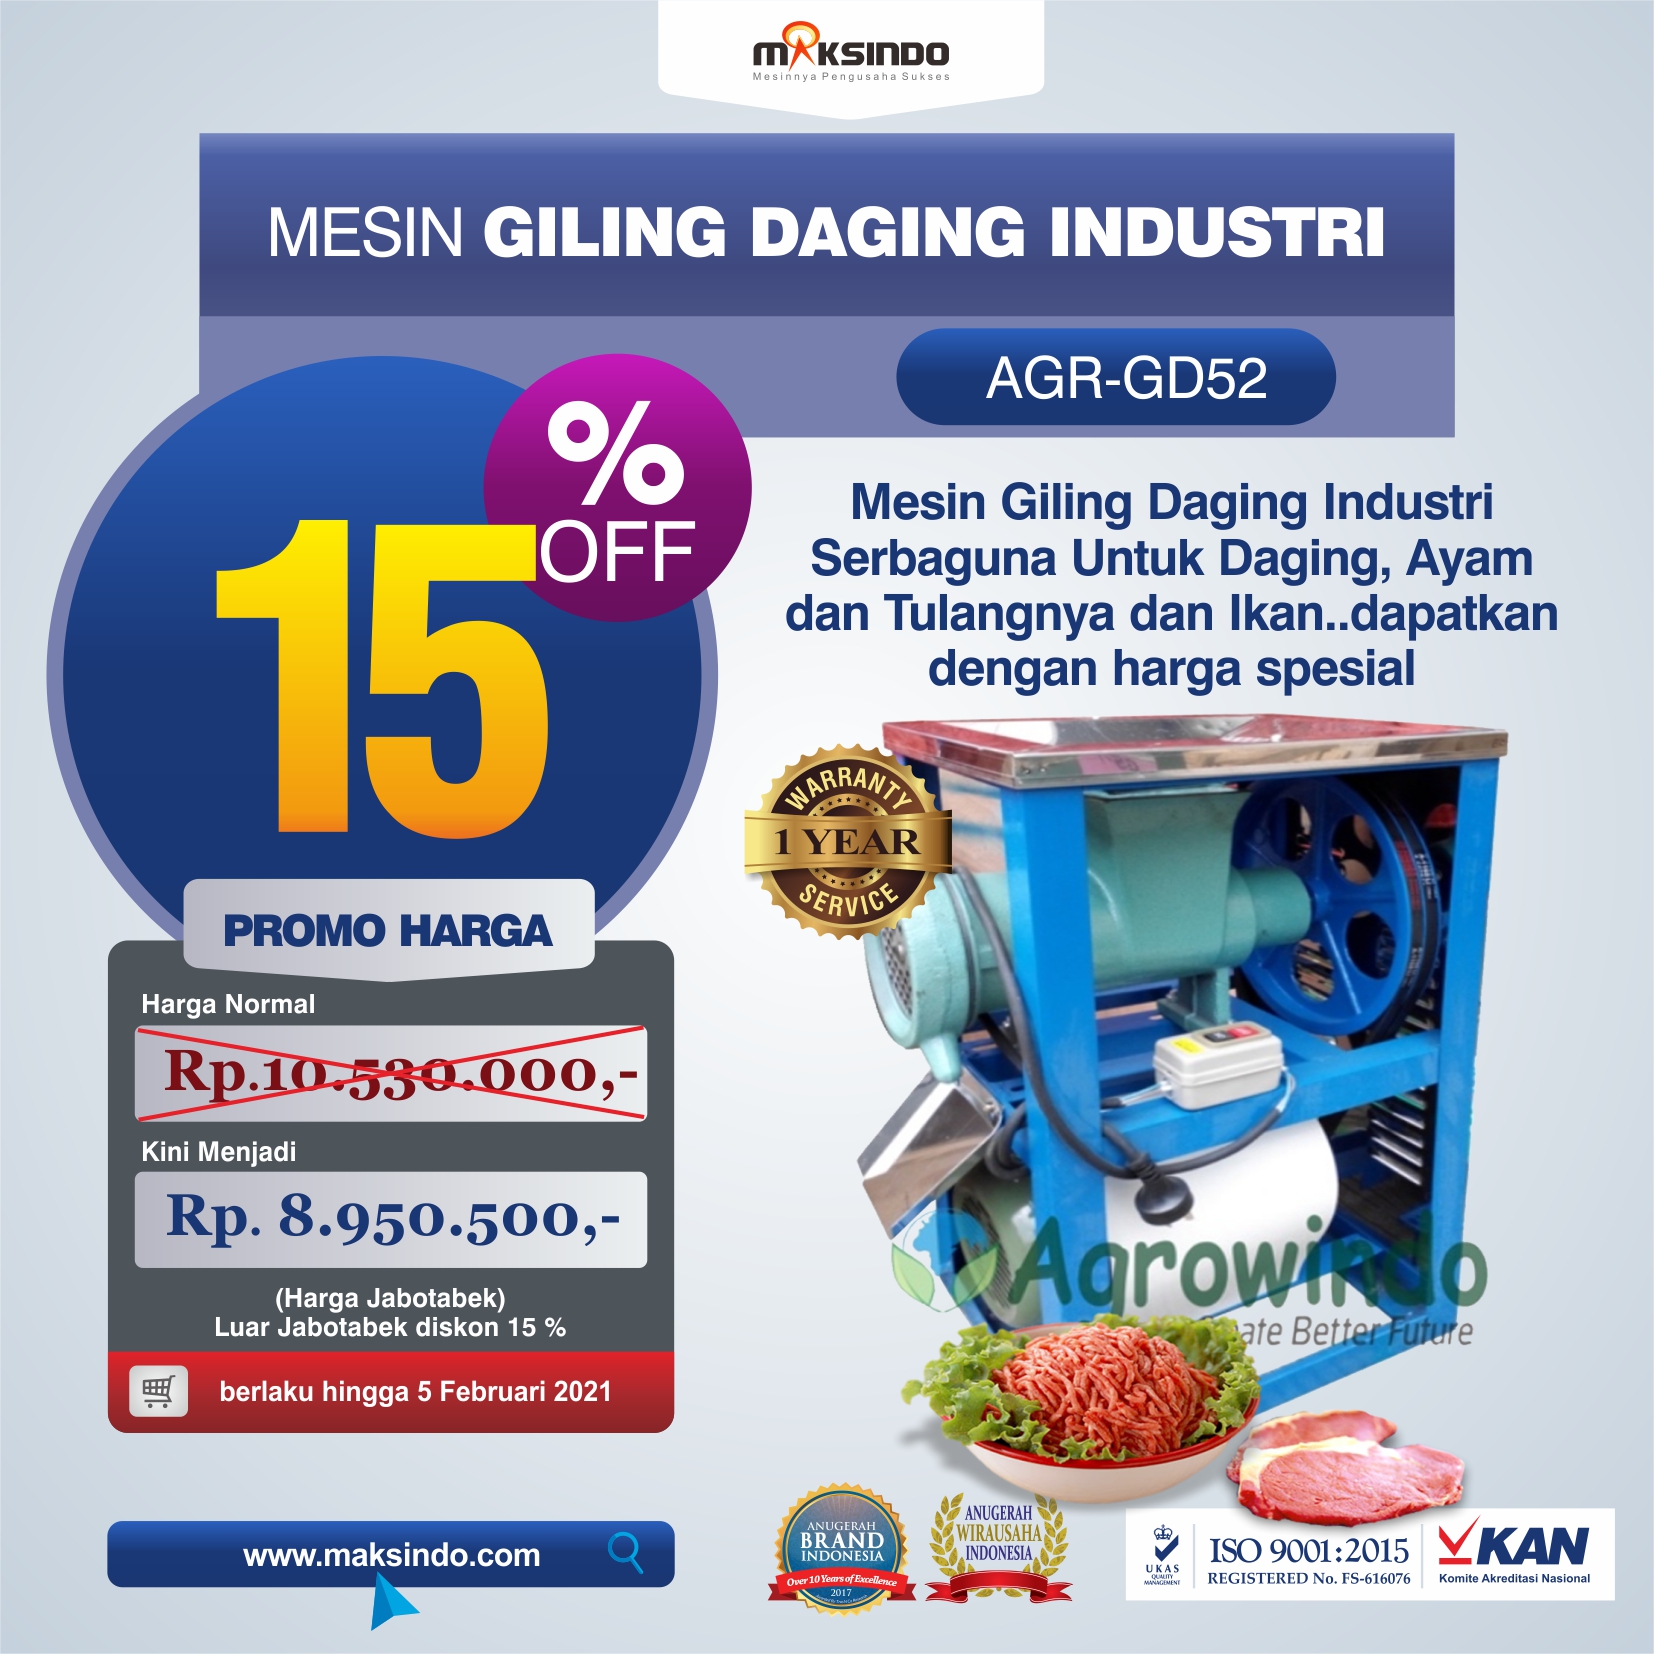 Jual Mesin Giling Daging Industri (AGR-GD52) di Tangerang